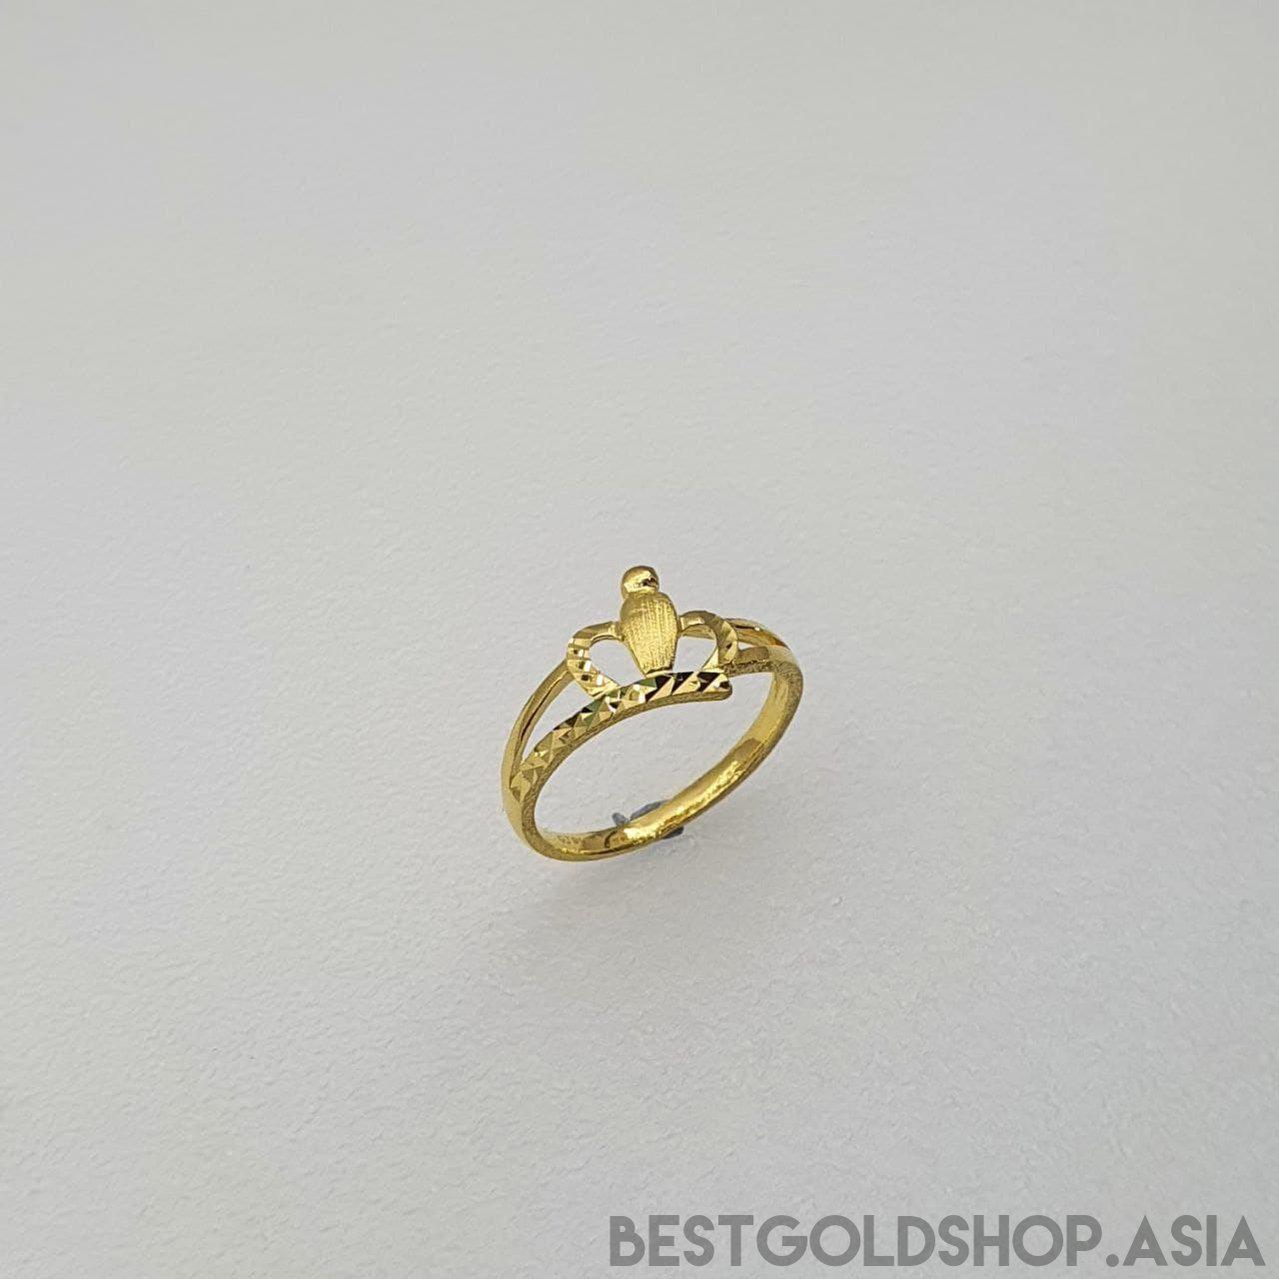 22k / 916 Gold Crown Ring V2-916 gold-Best Gold Shop